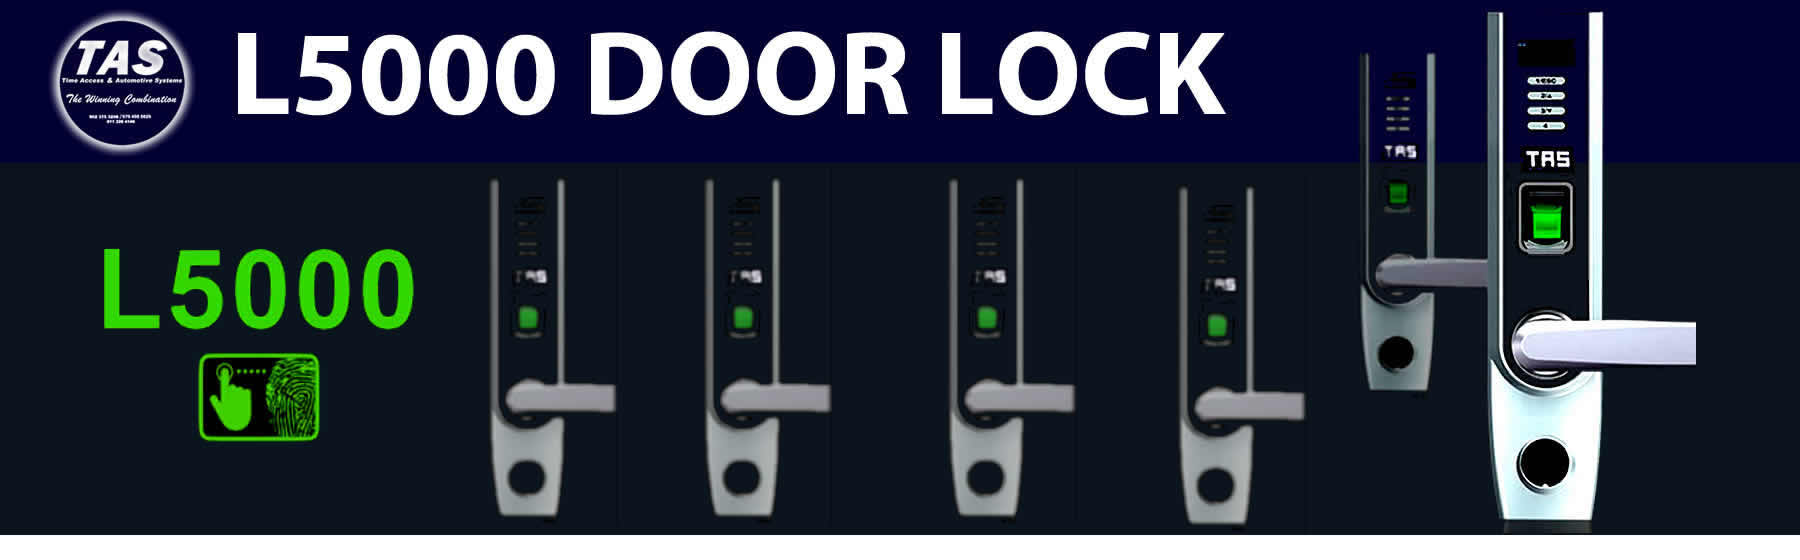 L5000 door locks banner